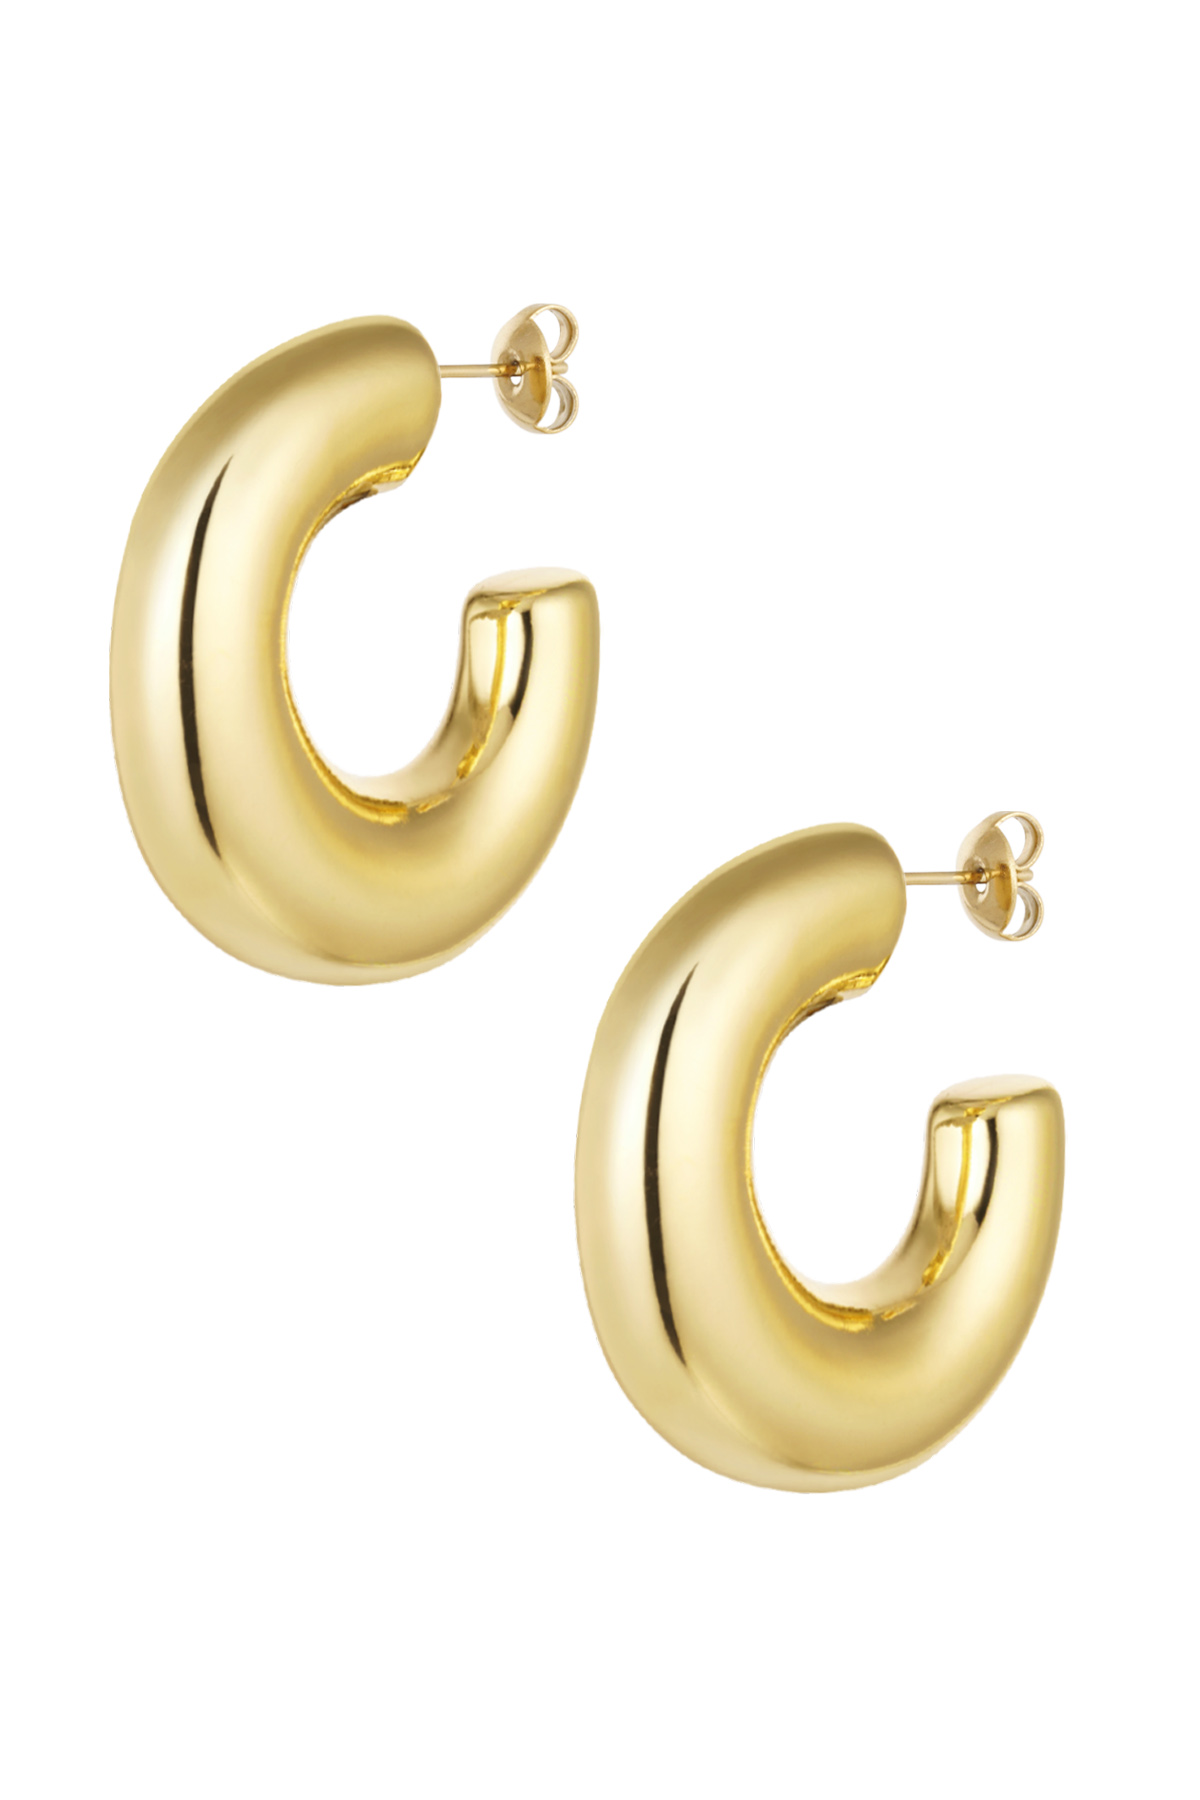 Earrings classy - gold